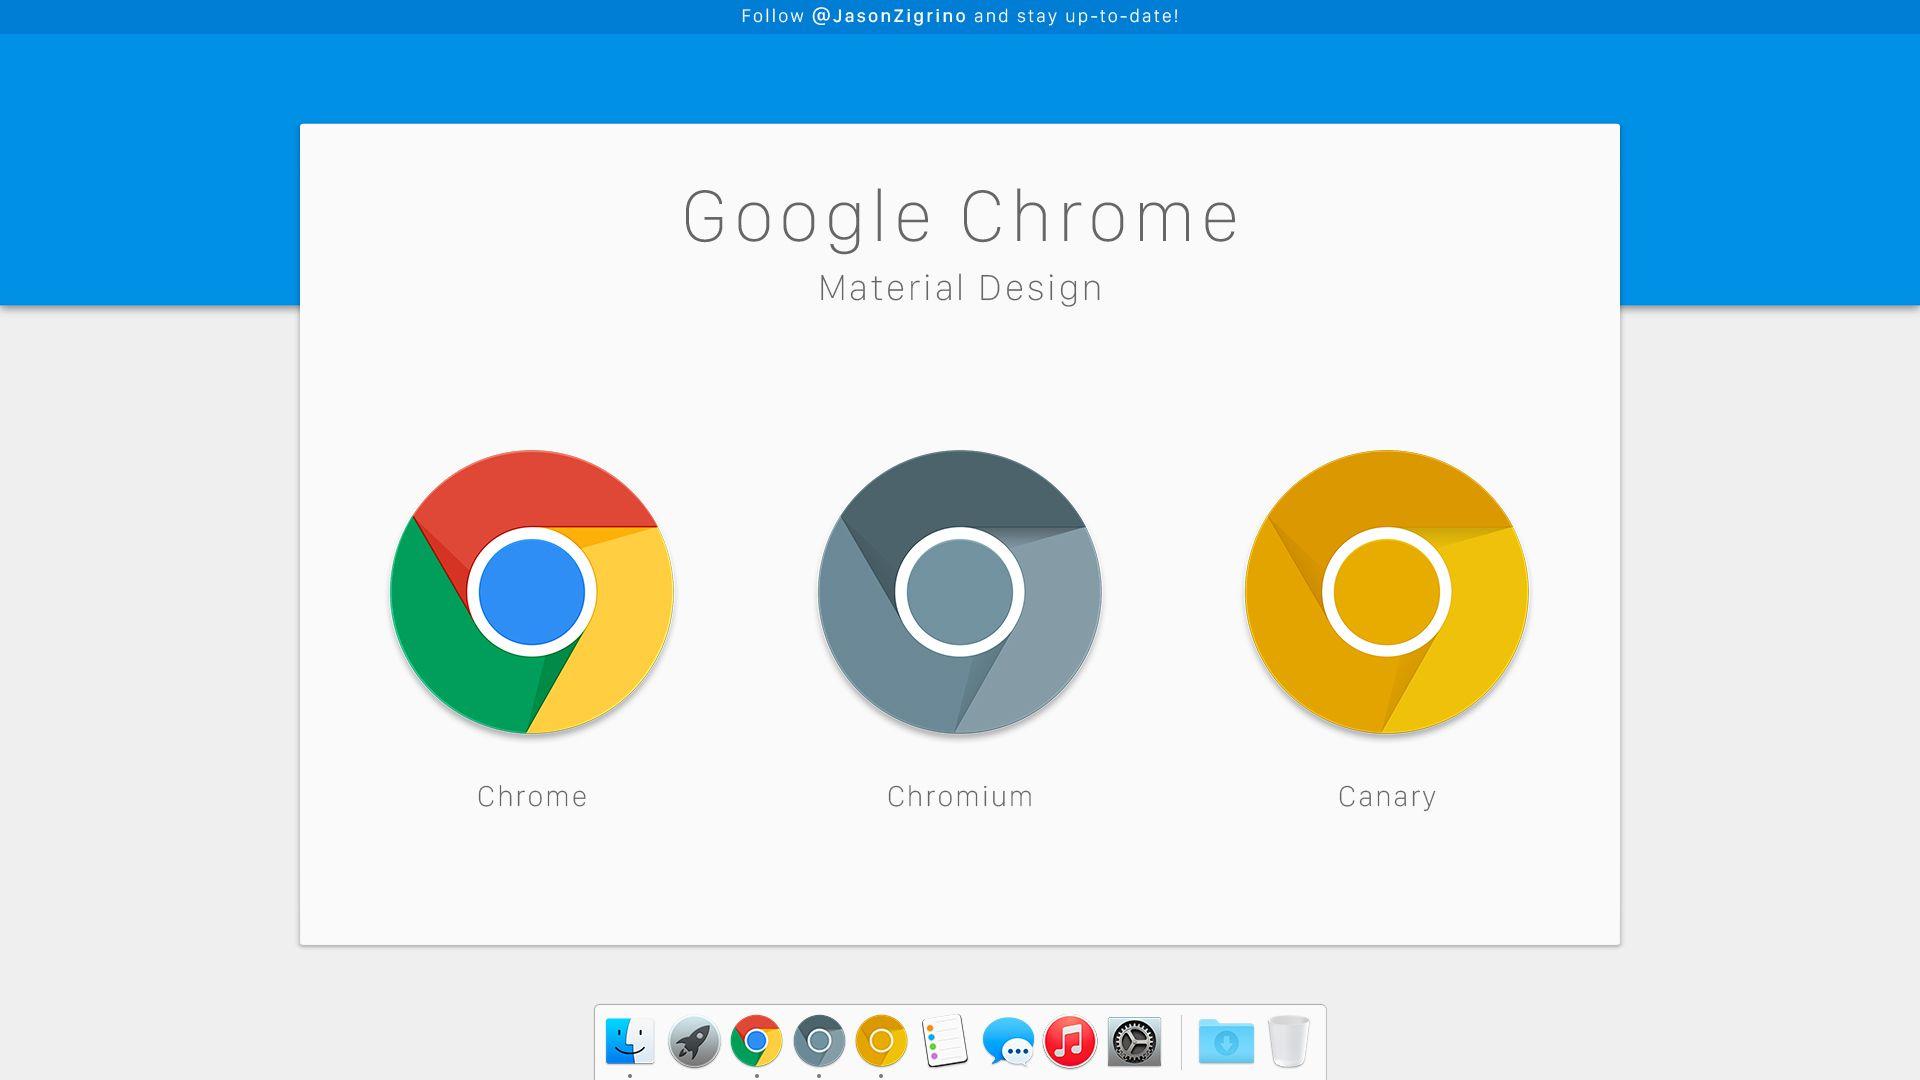 Chrome Mac Logo - Google Chrome Material Design